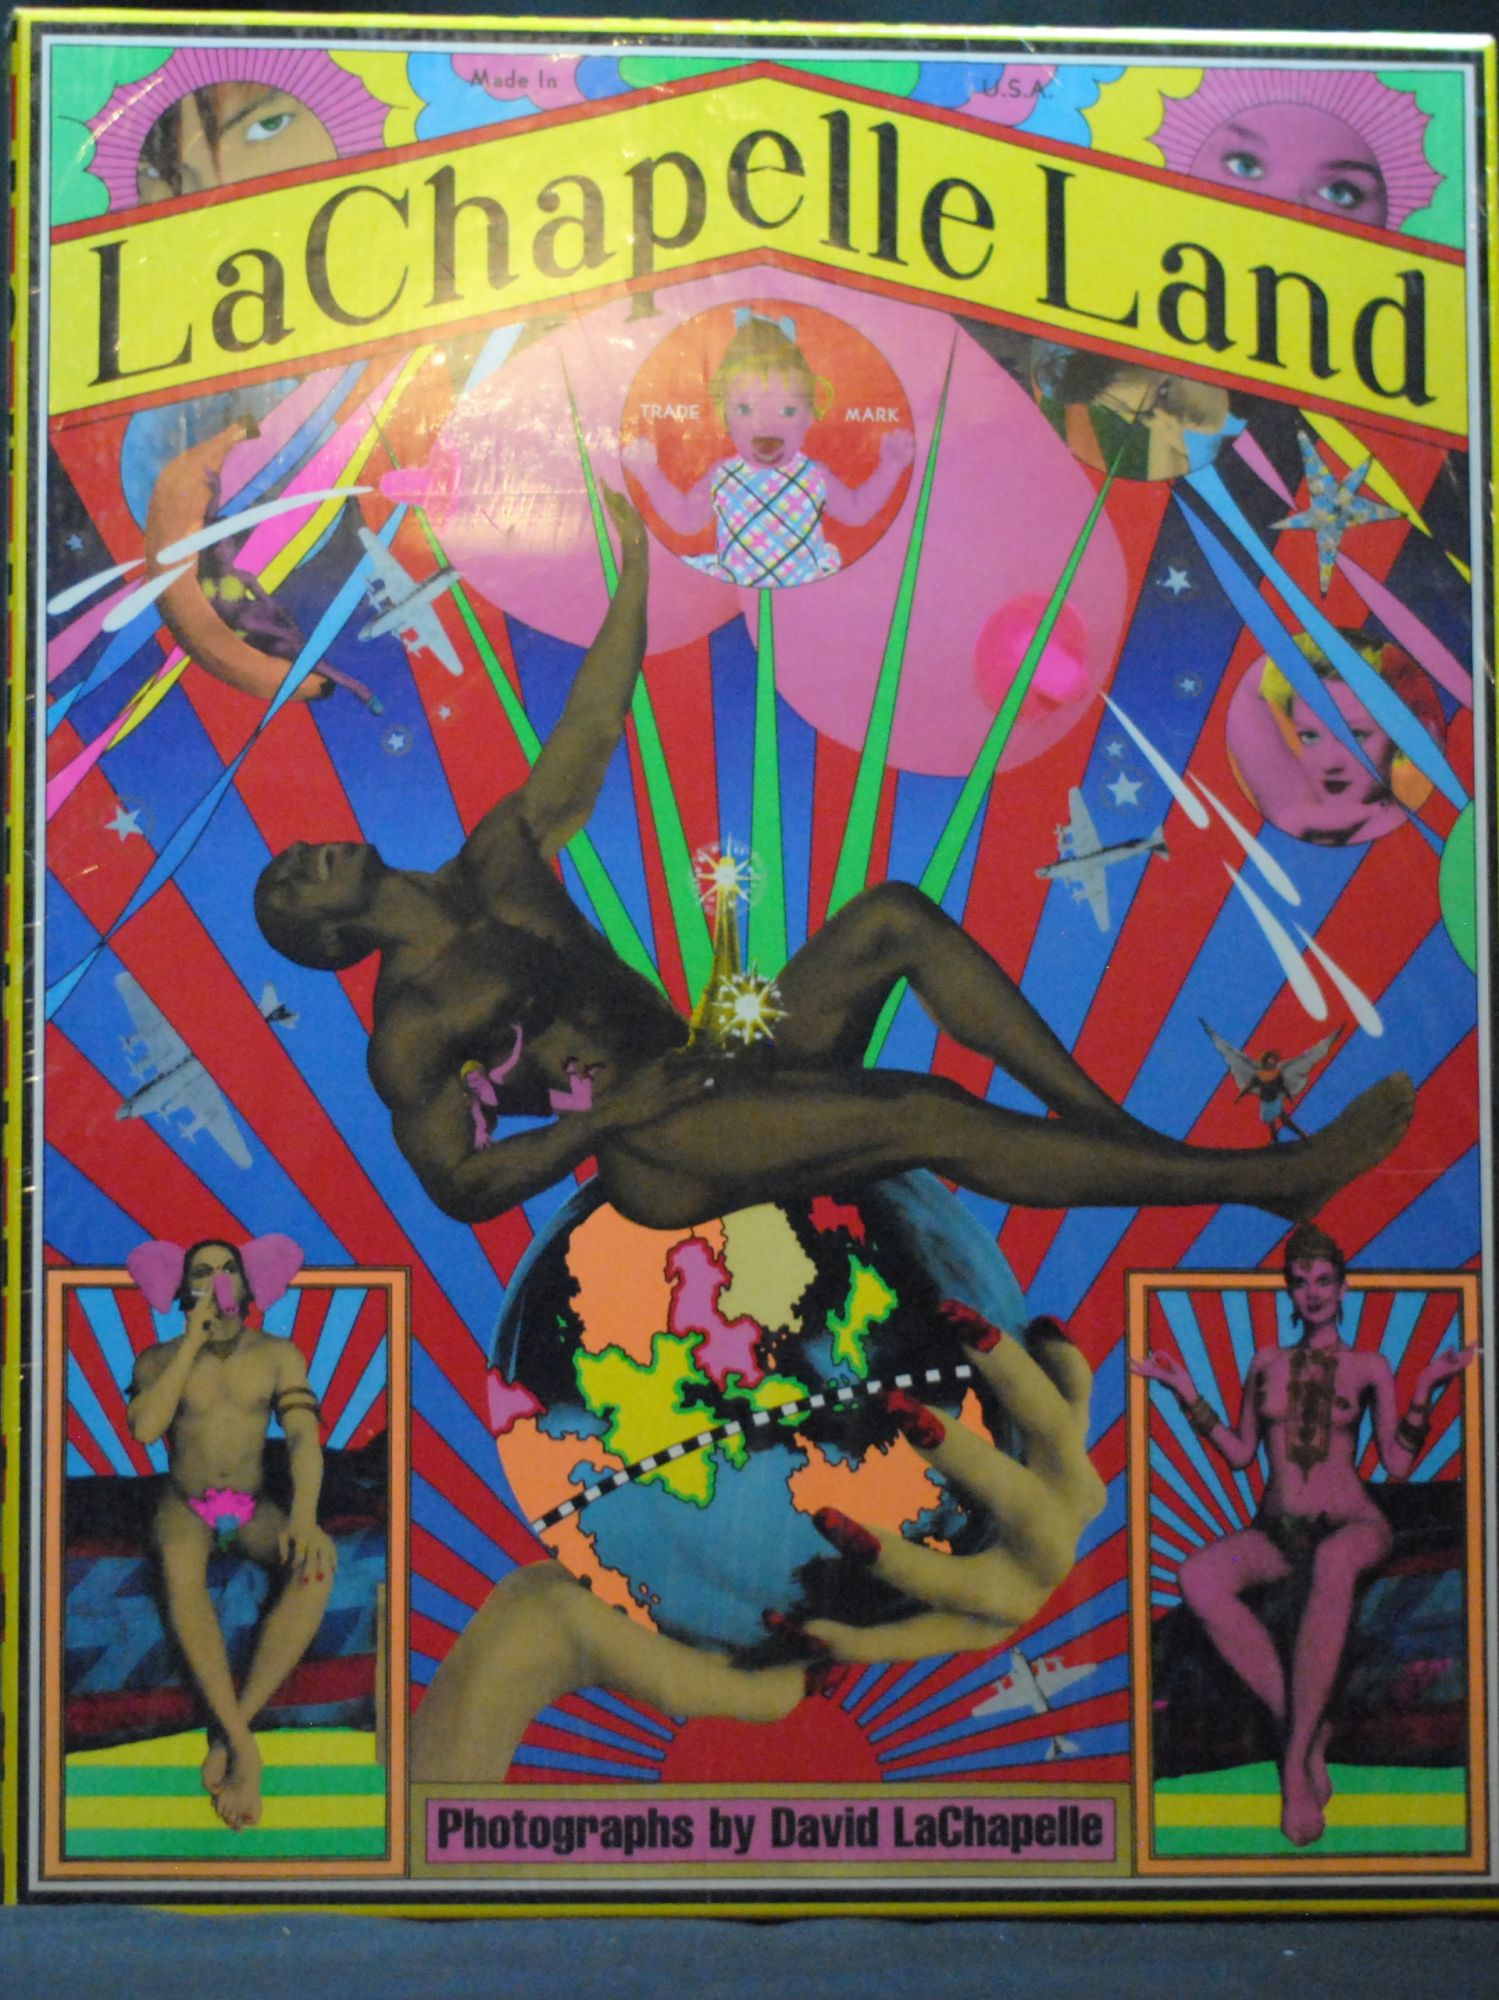 LaChapelle Land (Deluxe Edition) - David LaChapelle